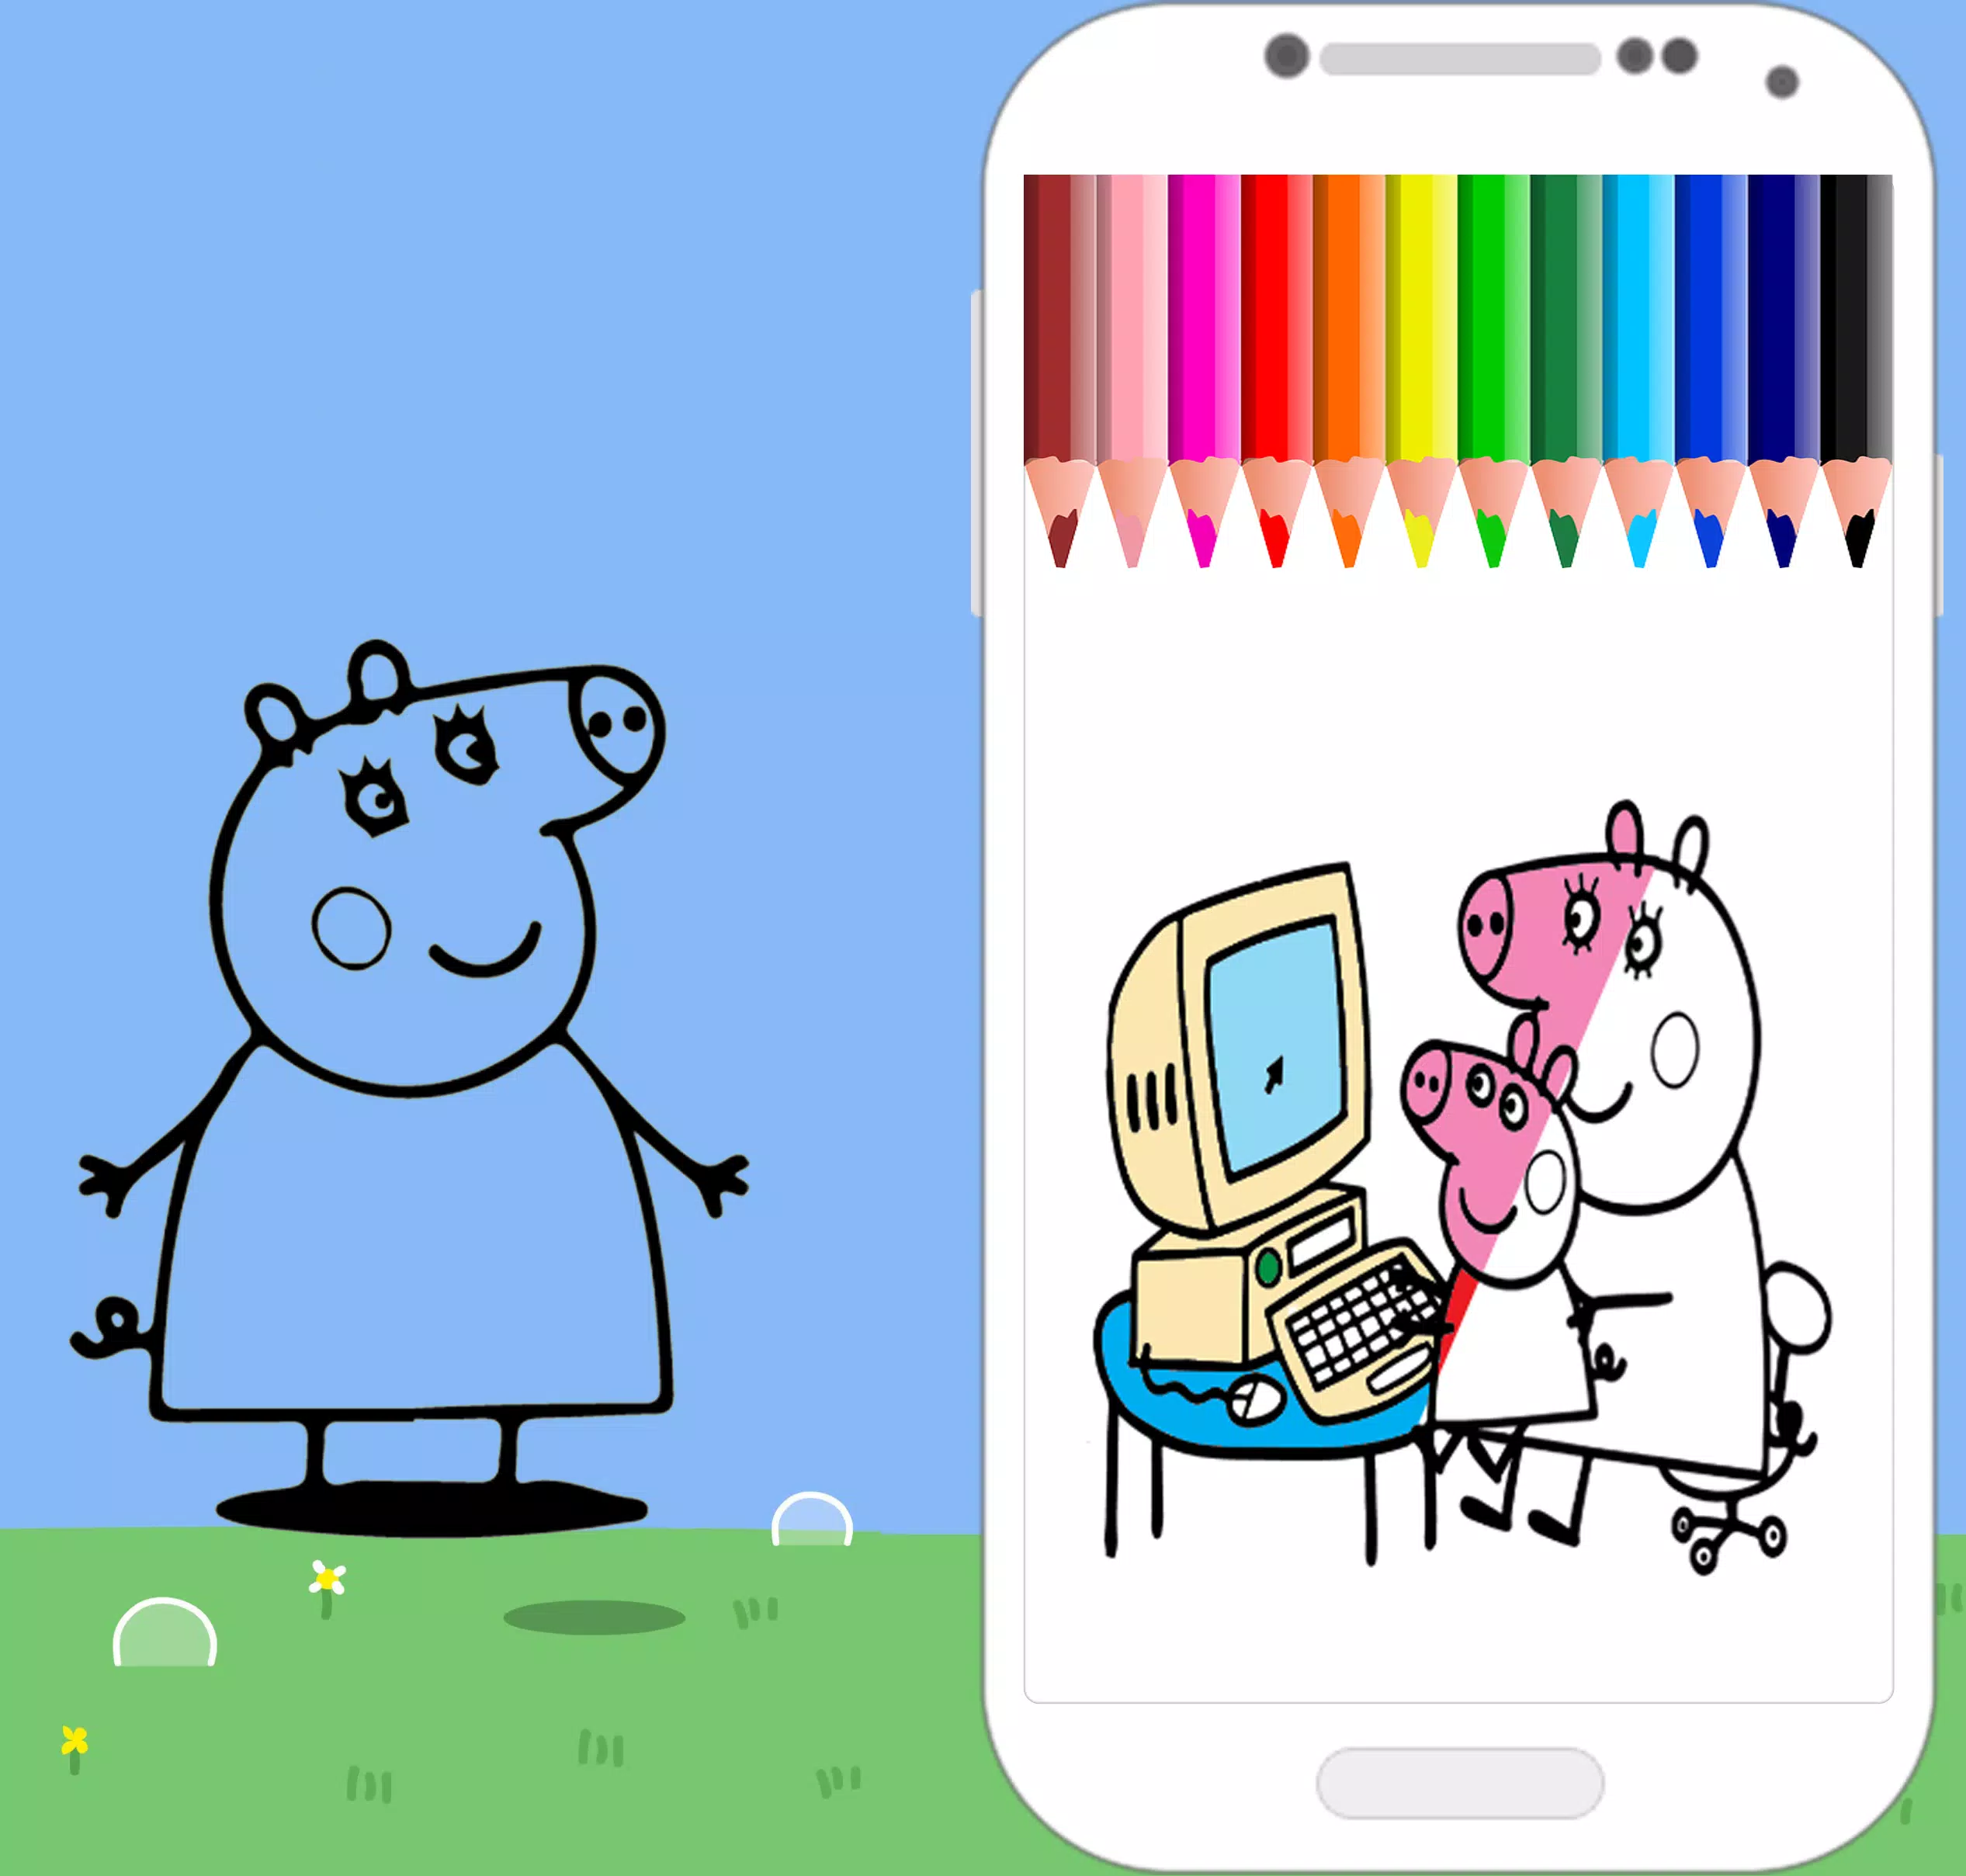 Peppa Pig para Colorir 4  Peppa pig cartoon, Peppa pig, Coloring pages